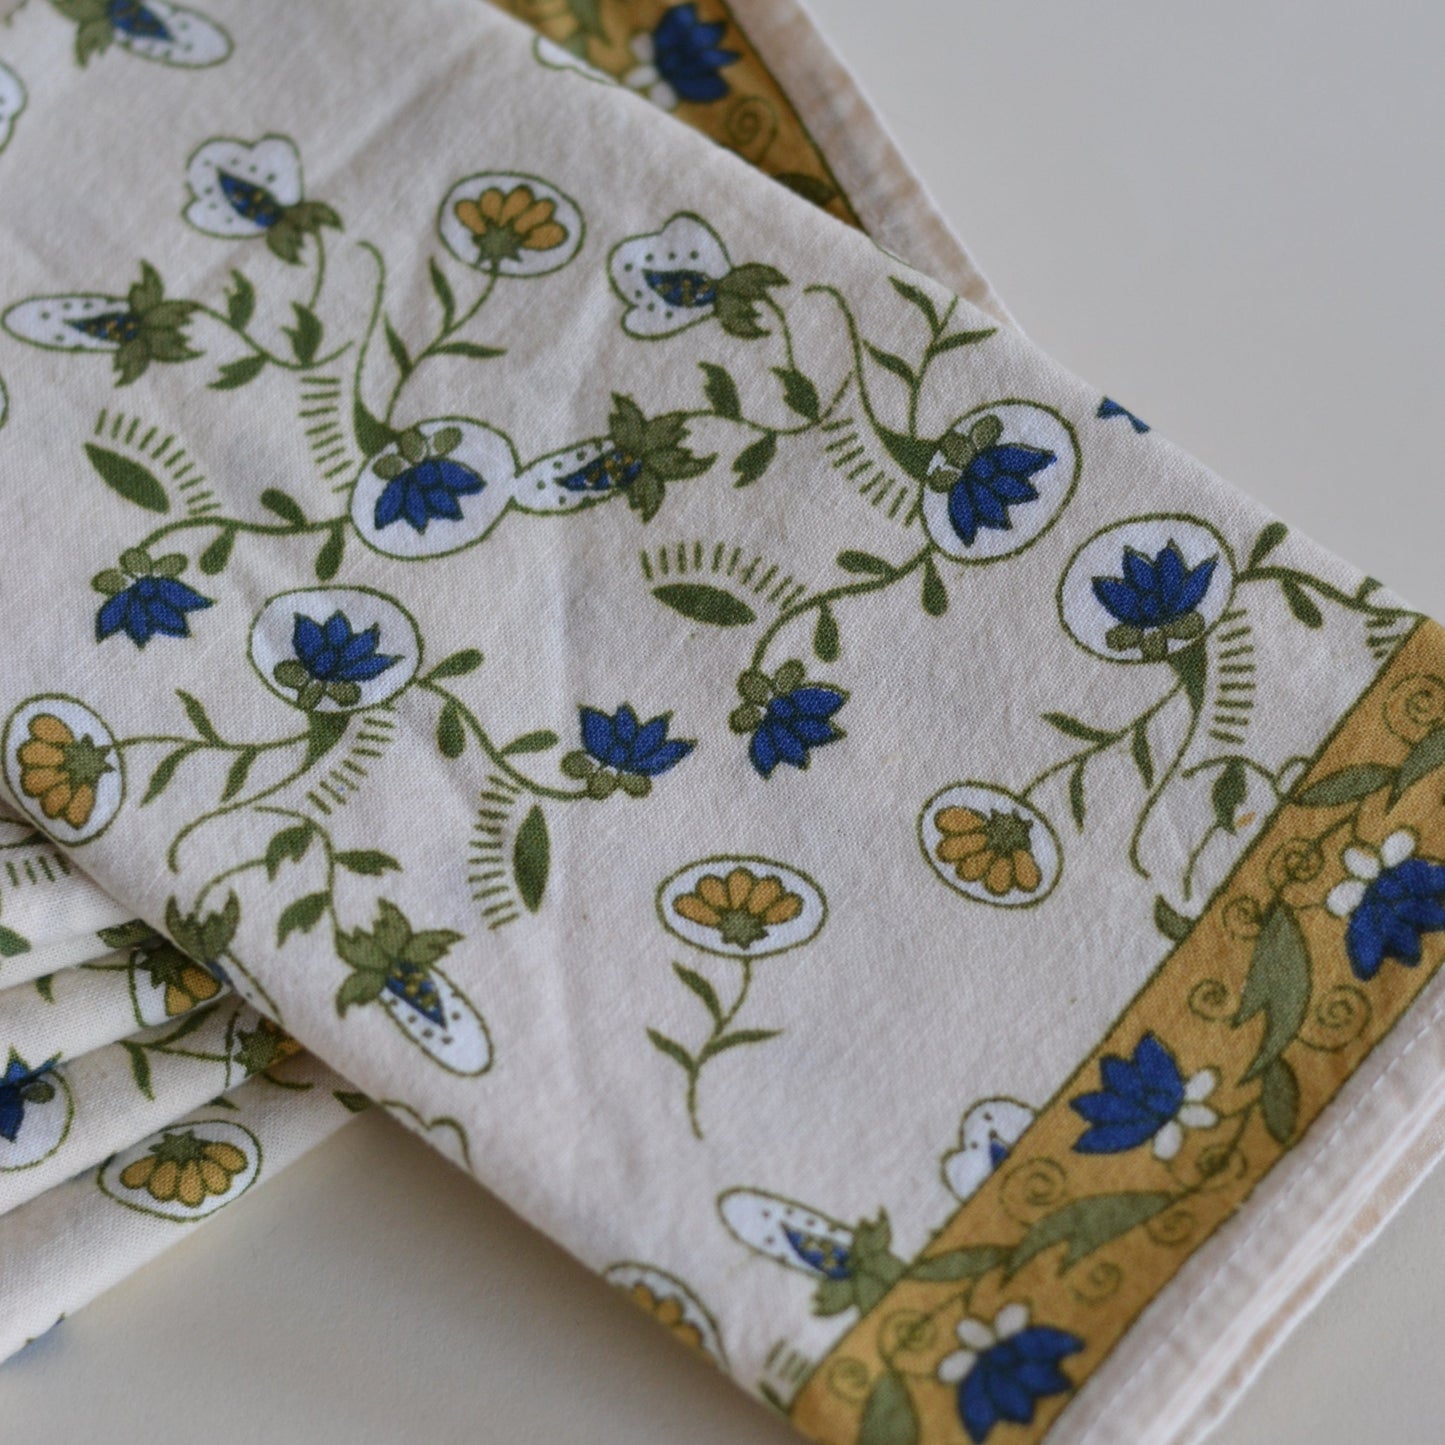 Cloth Napkins with Blue Floral Design, Set of 6